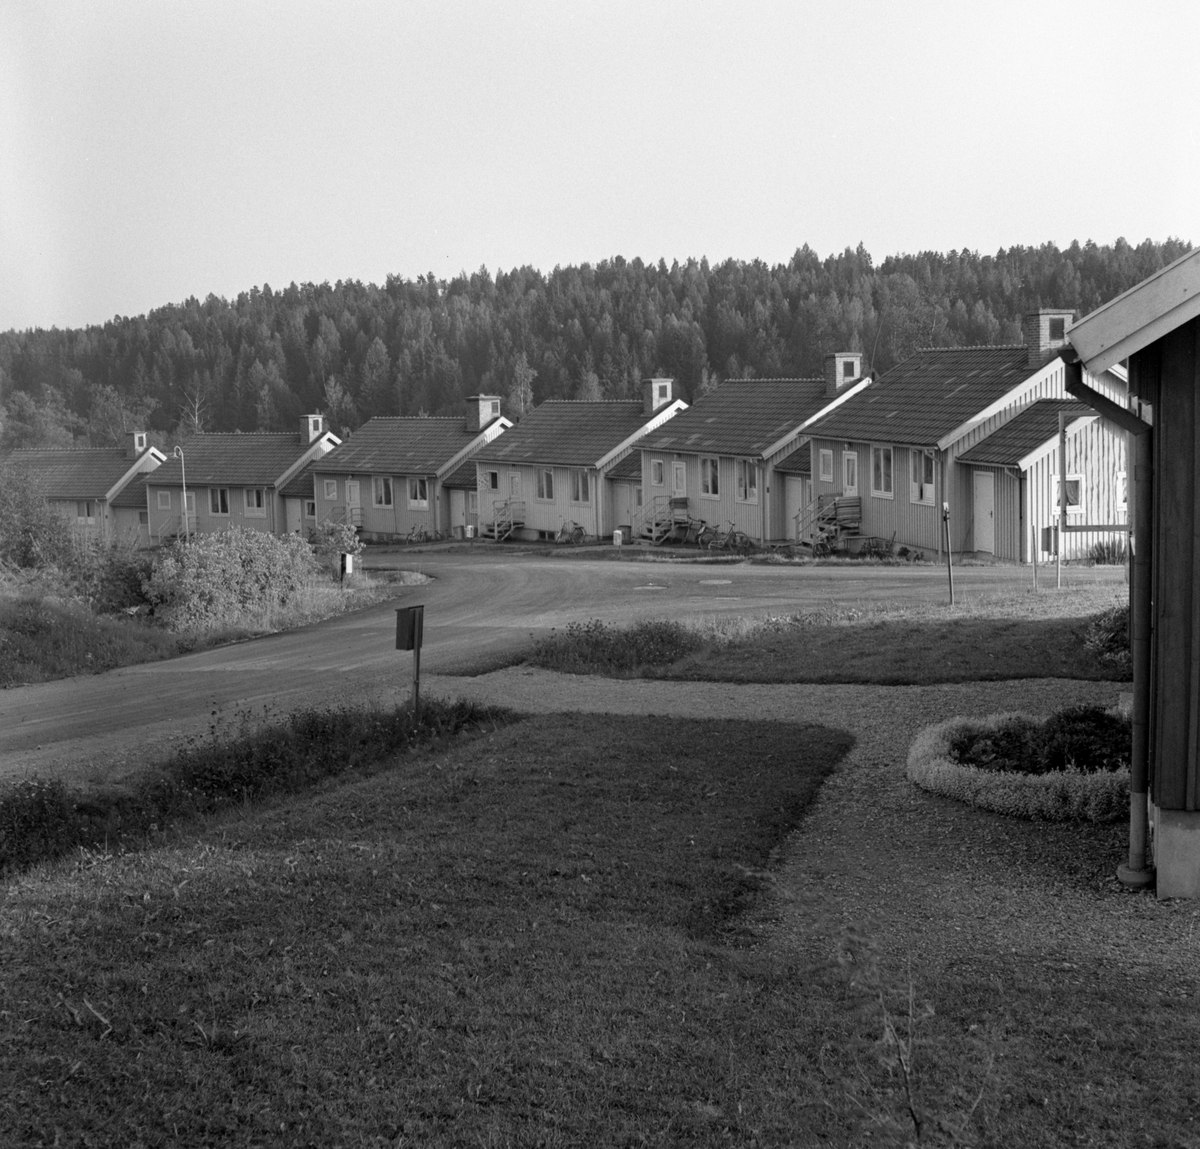 Älvenäs: Bild från augusti 1958.
Vinkelboda Ingenjörsvägen Älvenäs.